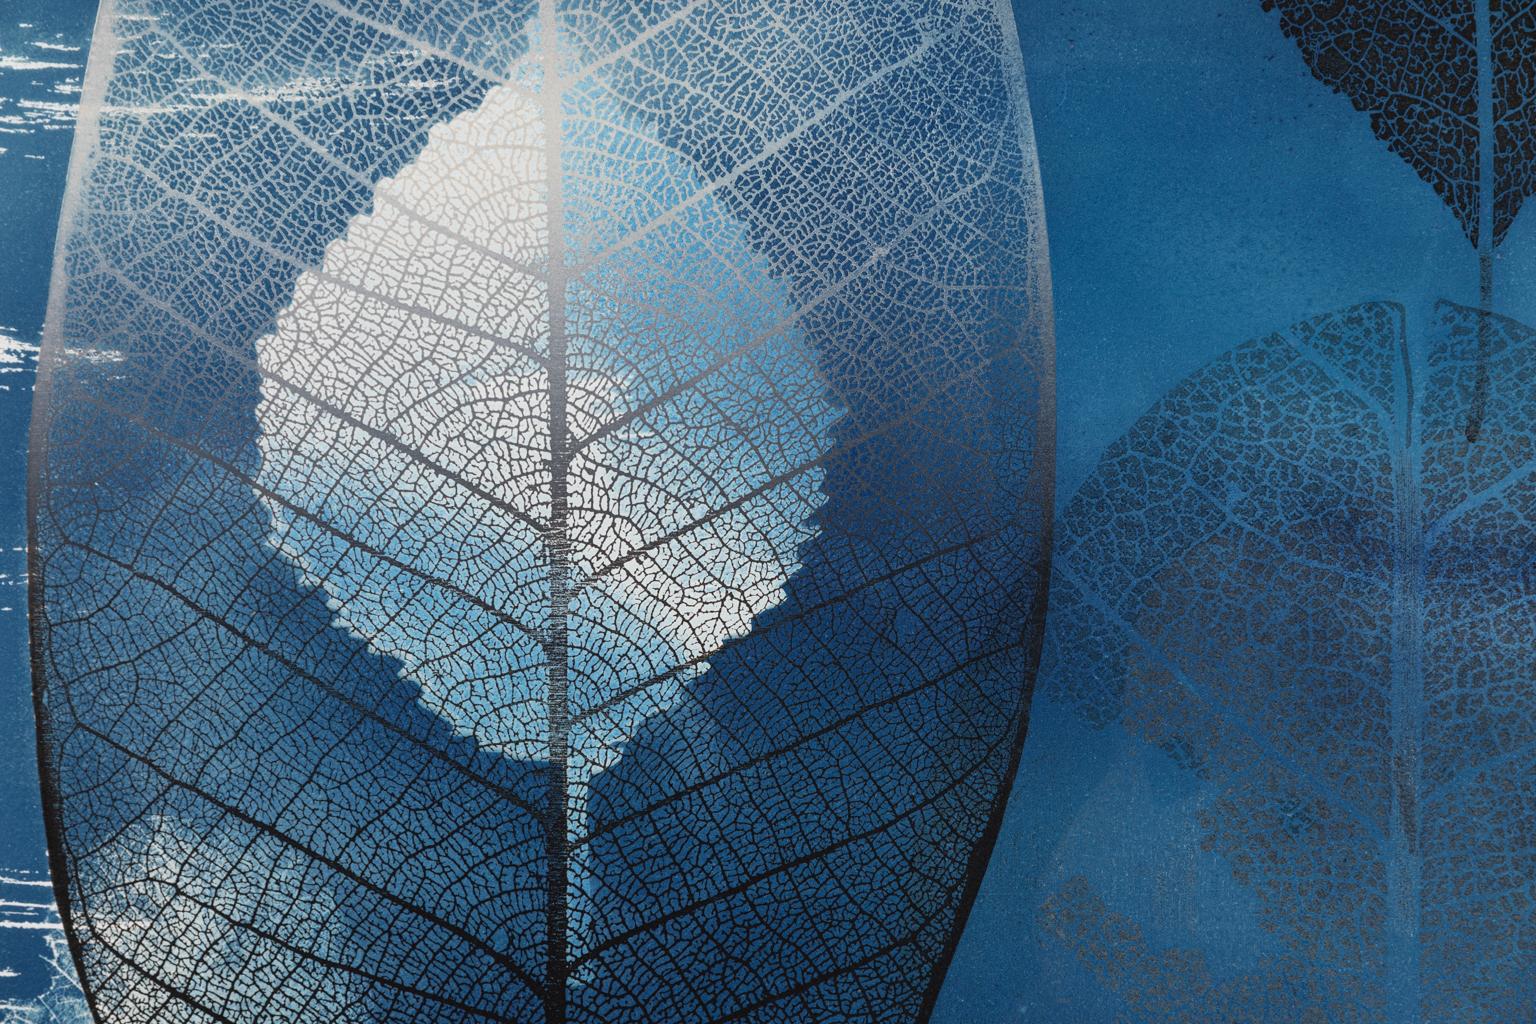 Leaf Ocean - Leaves in Blue Ocean Large Cyanotype Woodcut Monotype - Print by Katherine Warinner